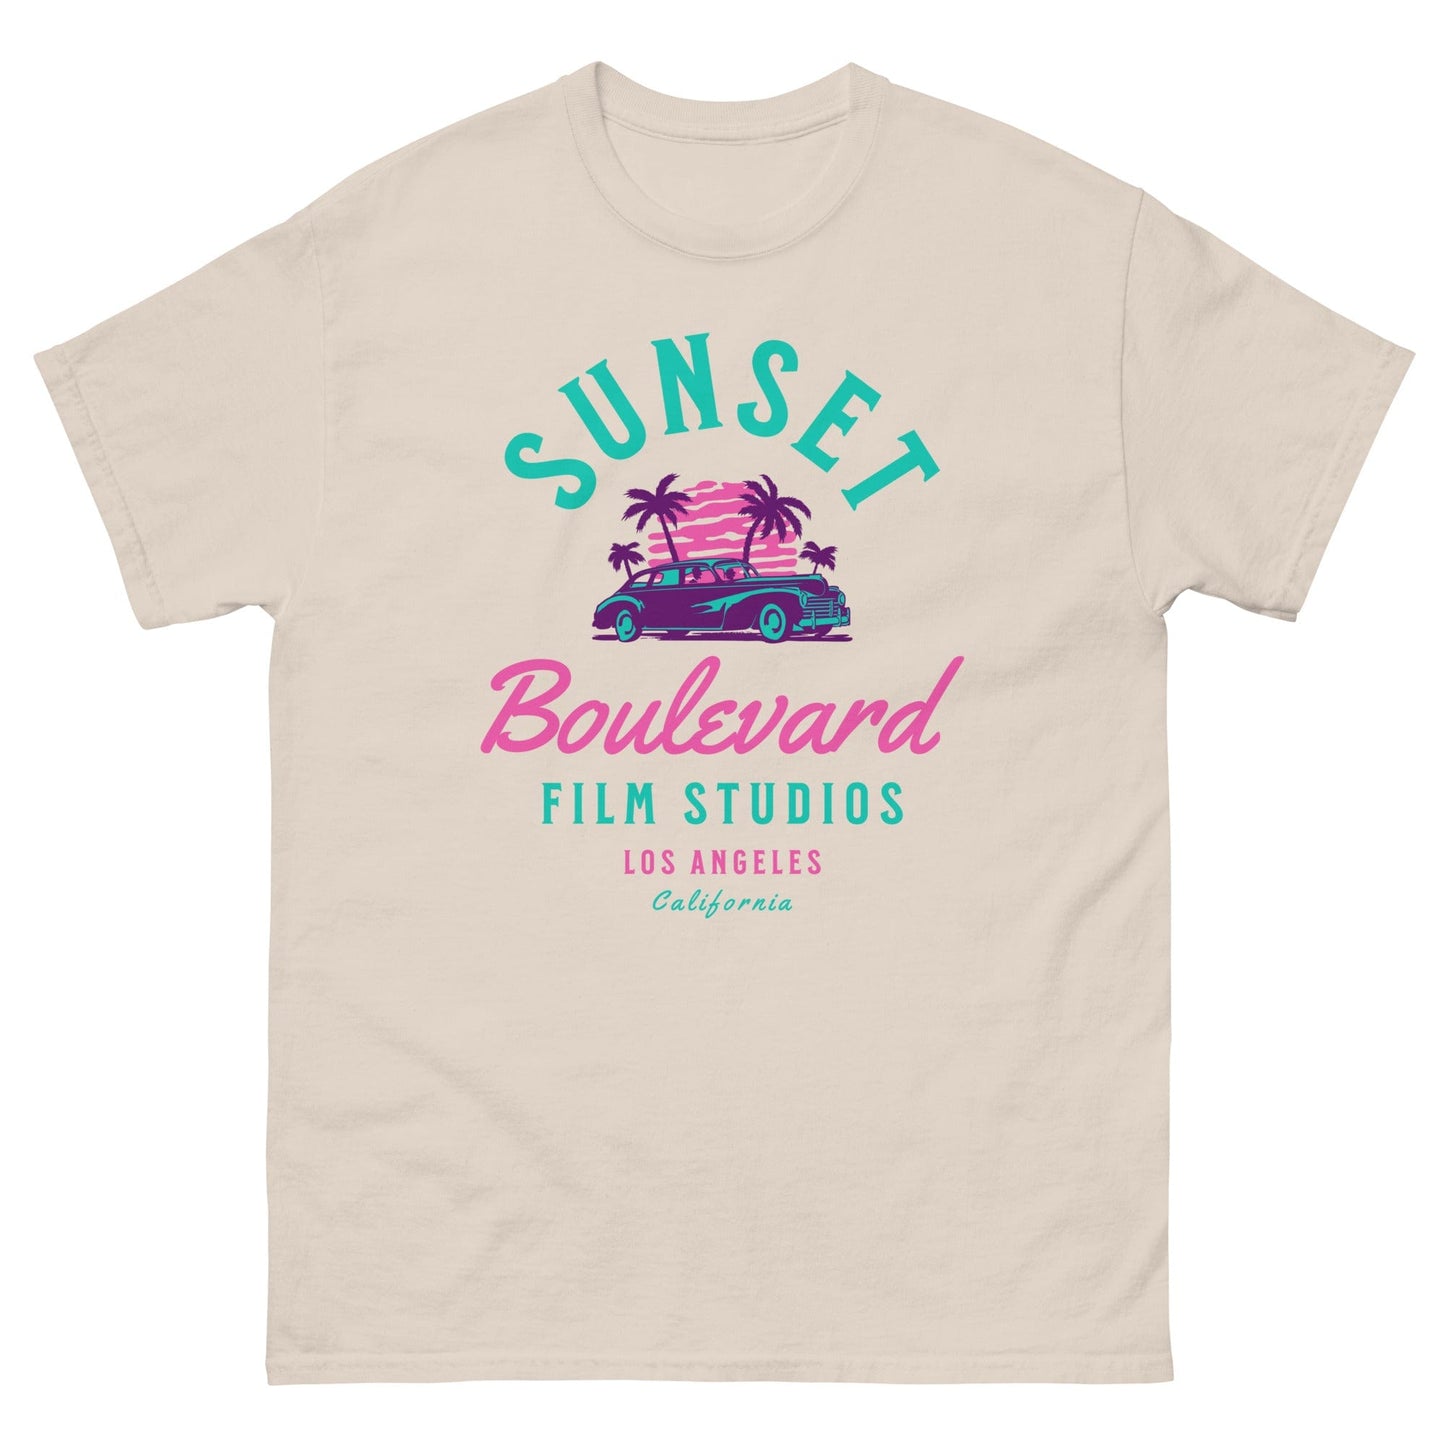 Sunset Boulevard Film Studios T-shirt Natural / S